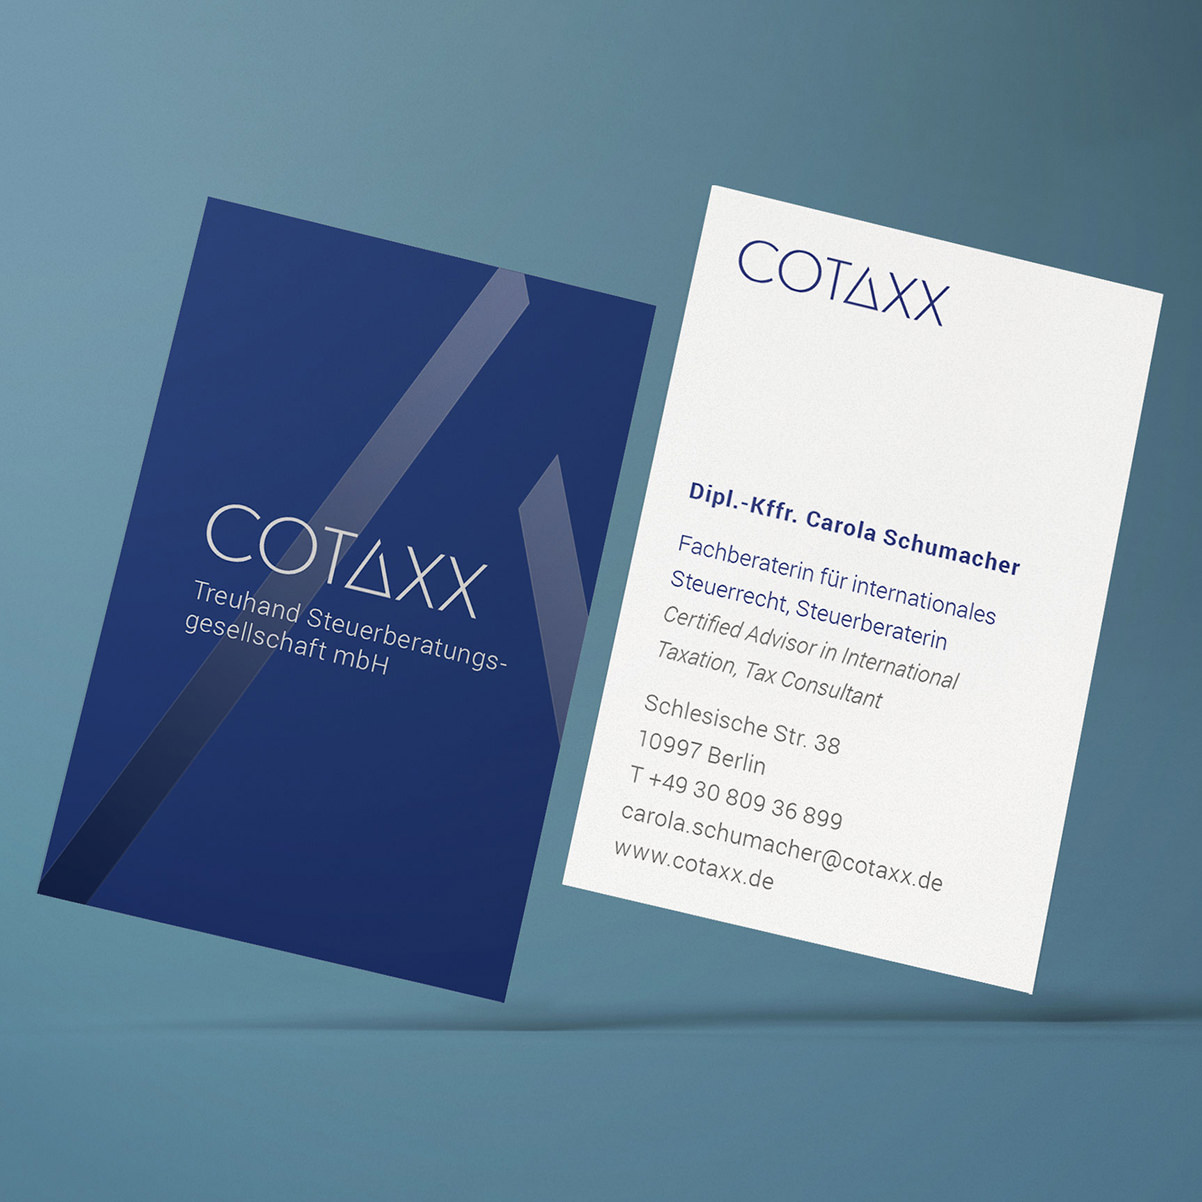 Projekt COTAXX